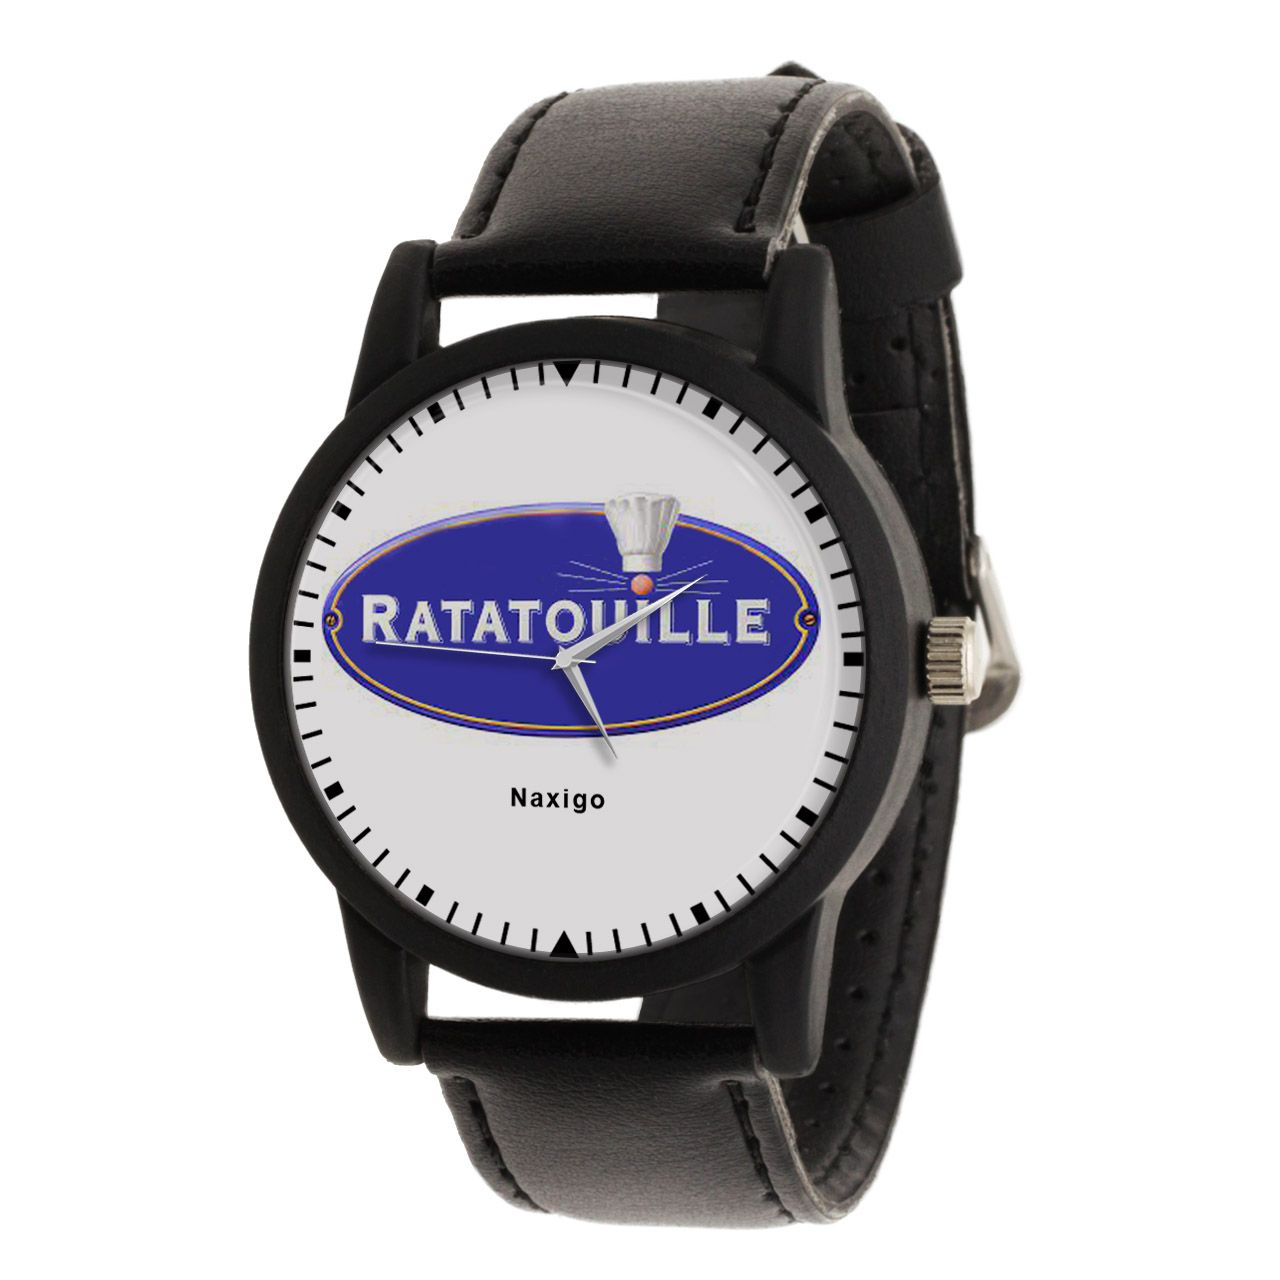 ساعت مچی عقربه ای ناکسیگو مدل Ratatouille کد LF14345 -  - 1